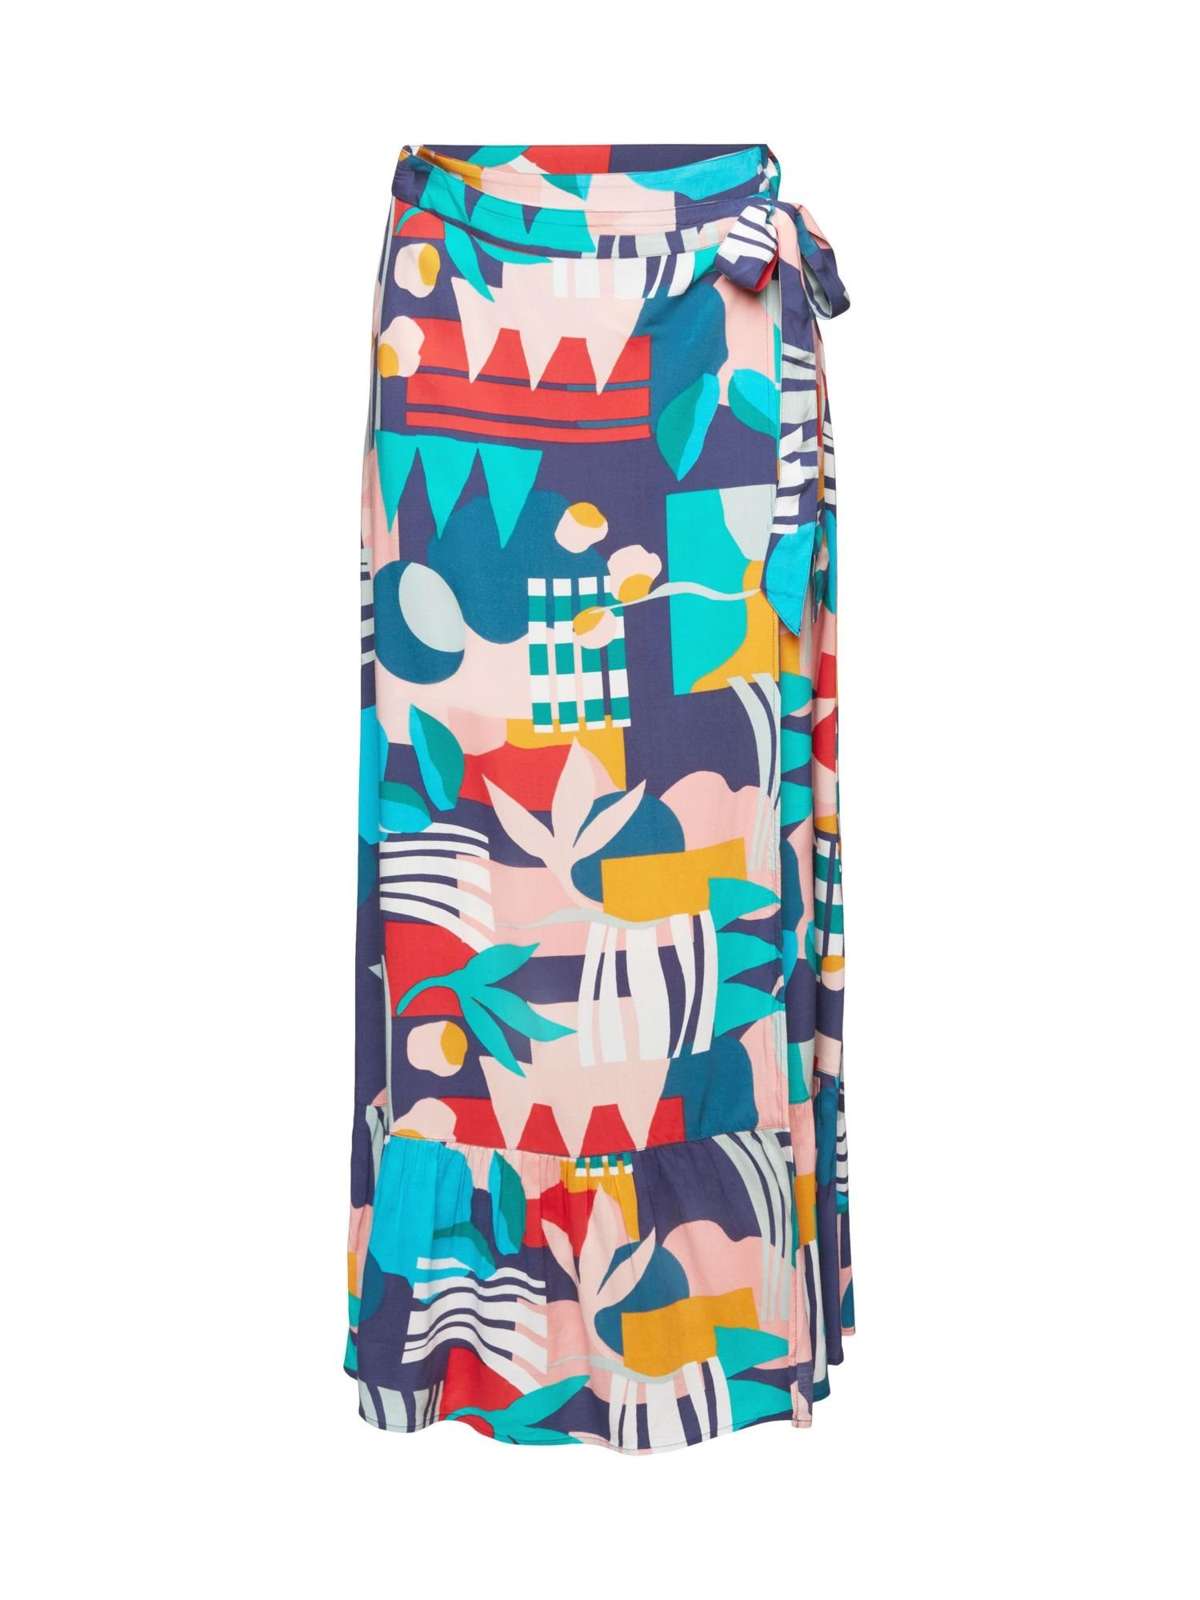 Пляжная юбка с запахом и разноцветным принтом